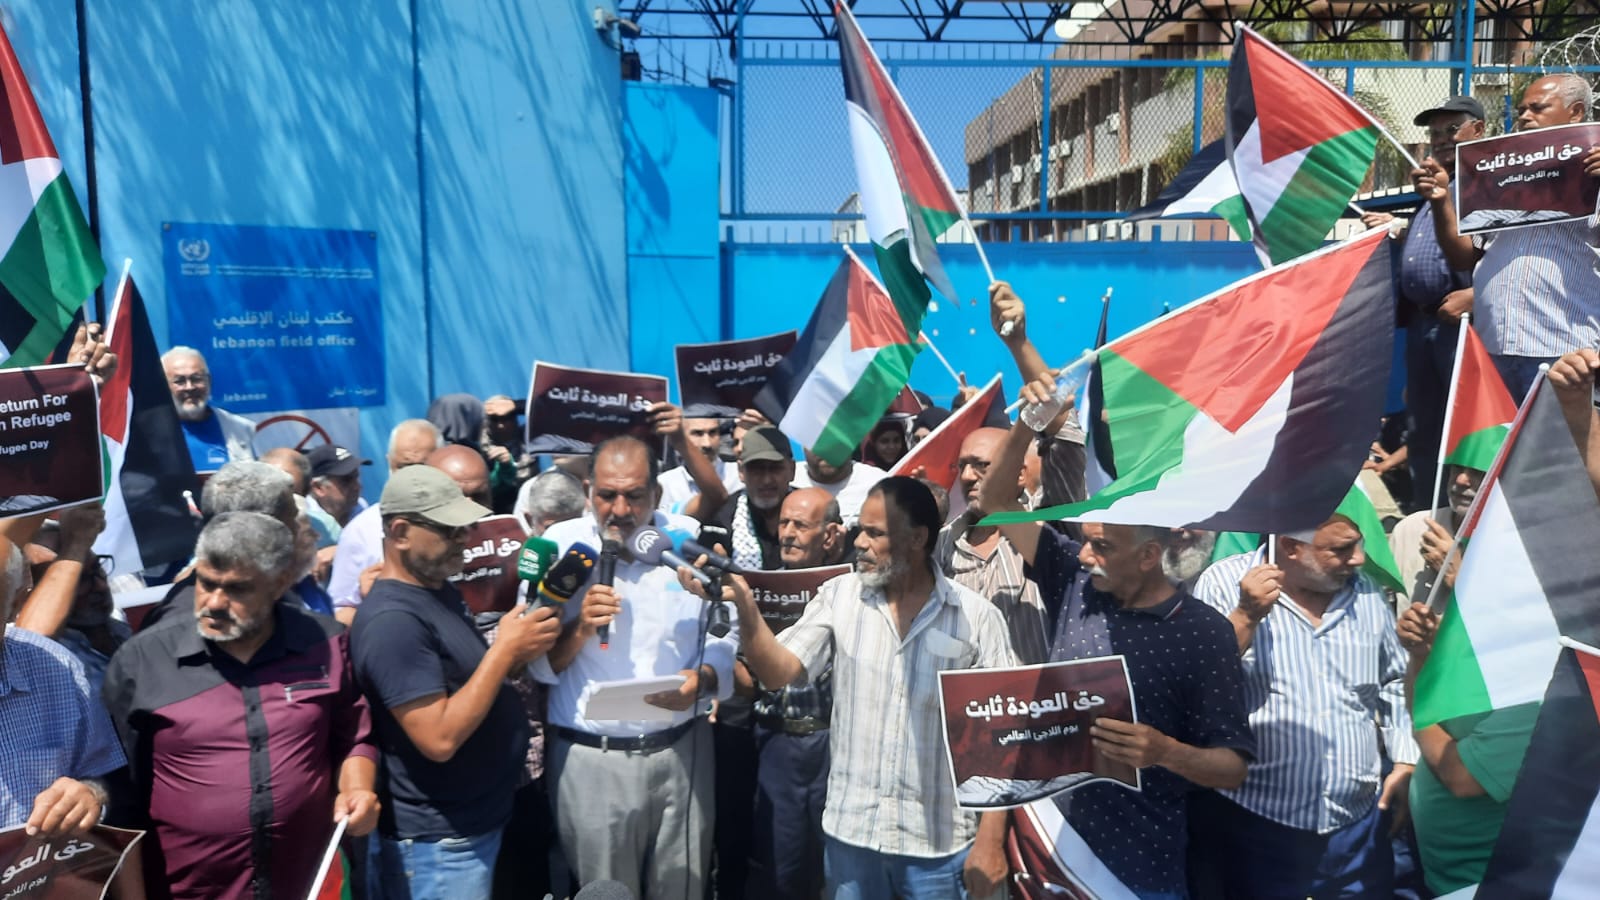 في يوم اللاجىء العالمي.. حماس تنظم تجمعًا شعبيًّا أمام مقر أونروا في بيروت